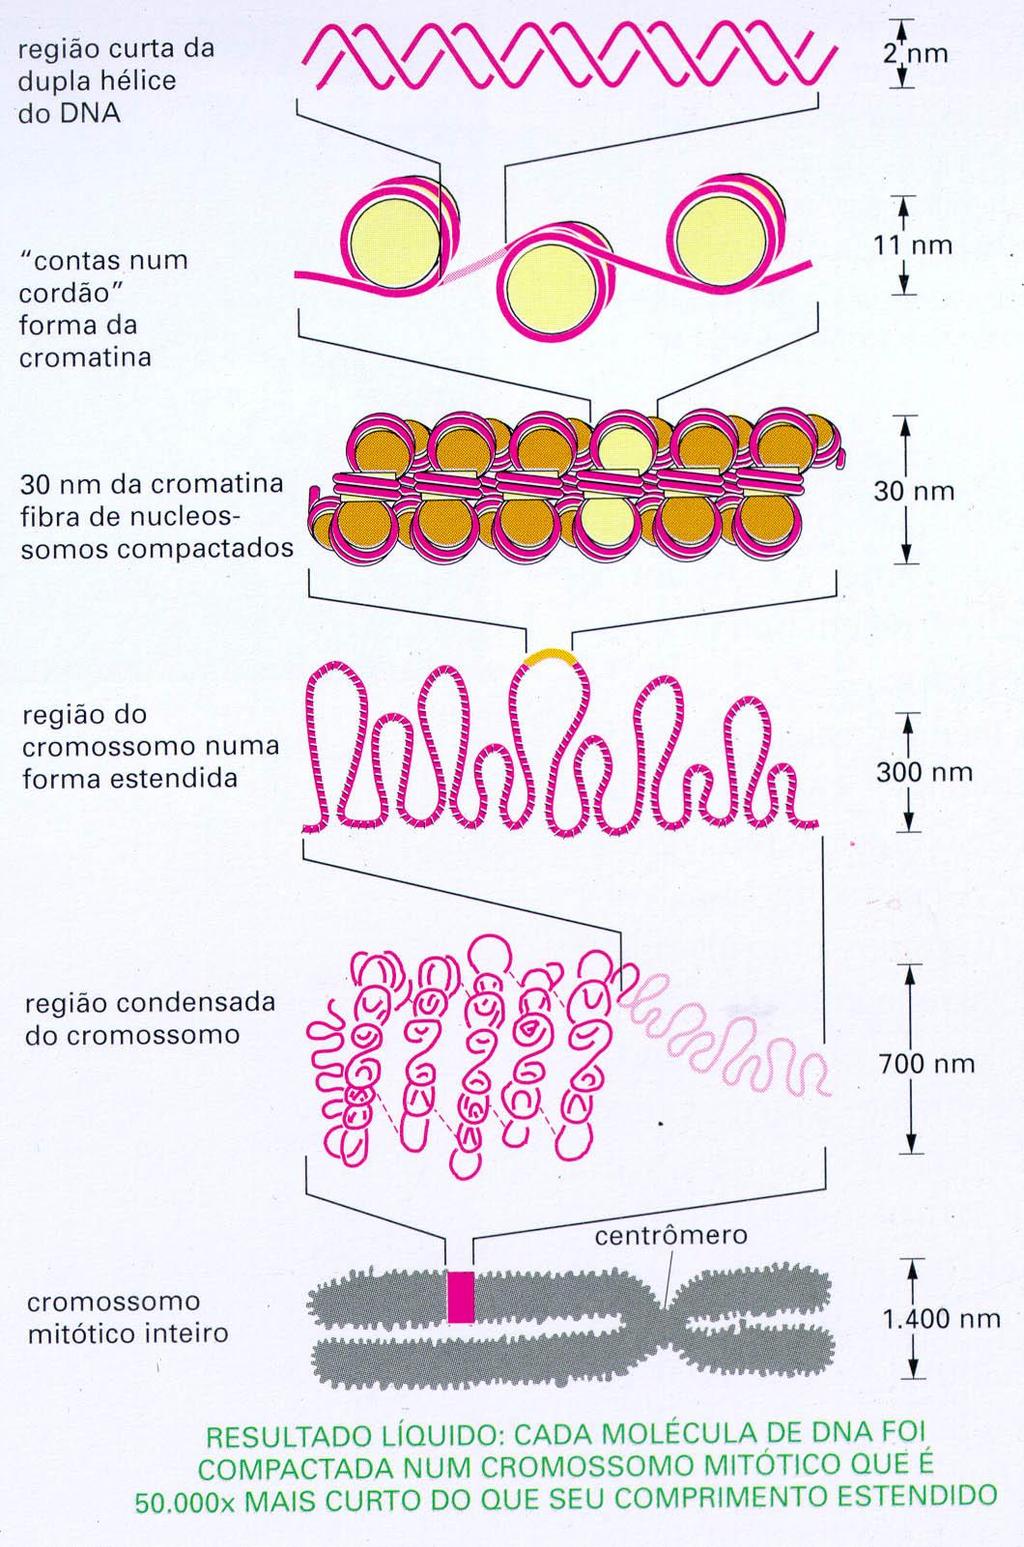 Estado de organização da cromatina no núcleo